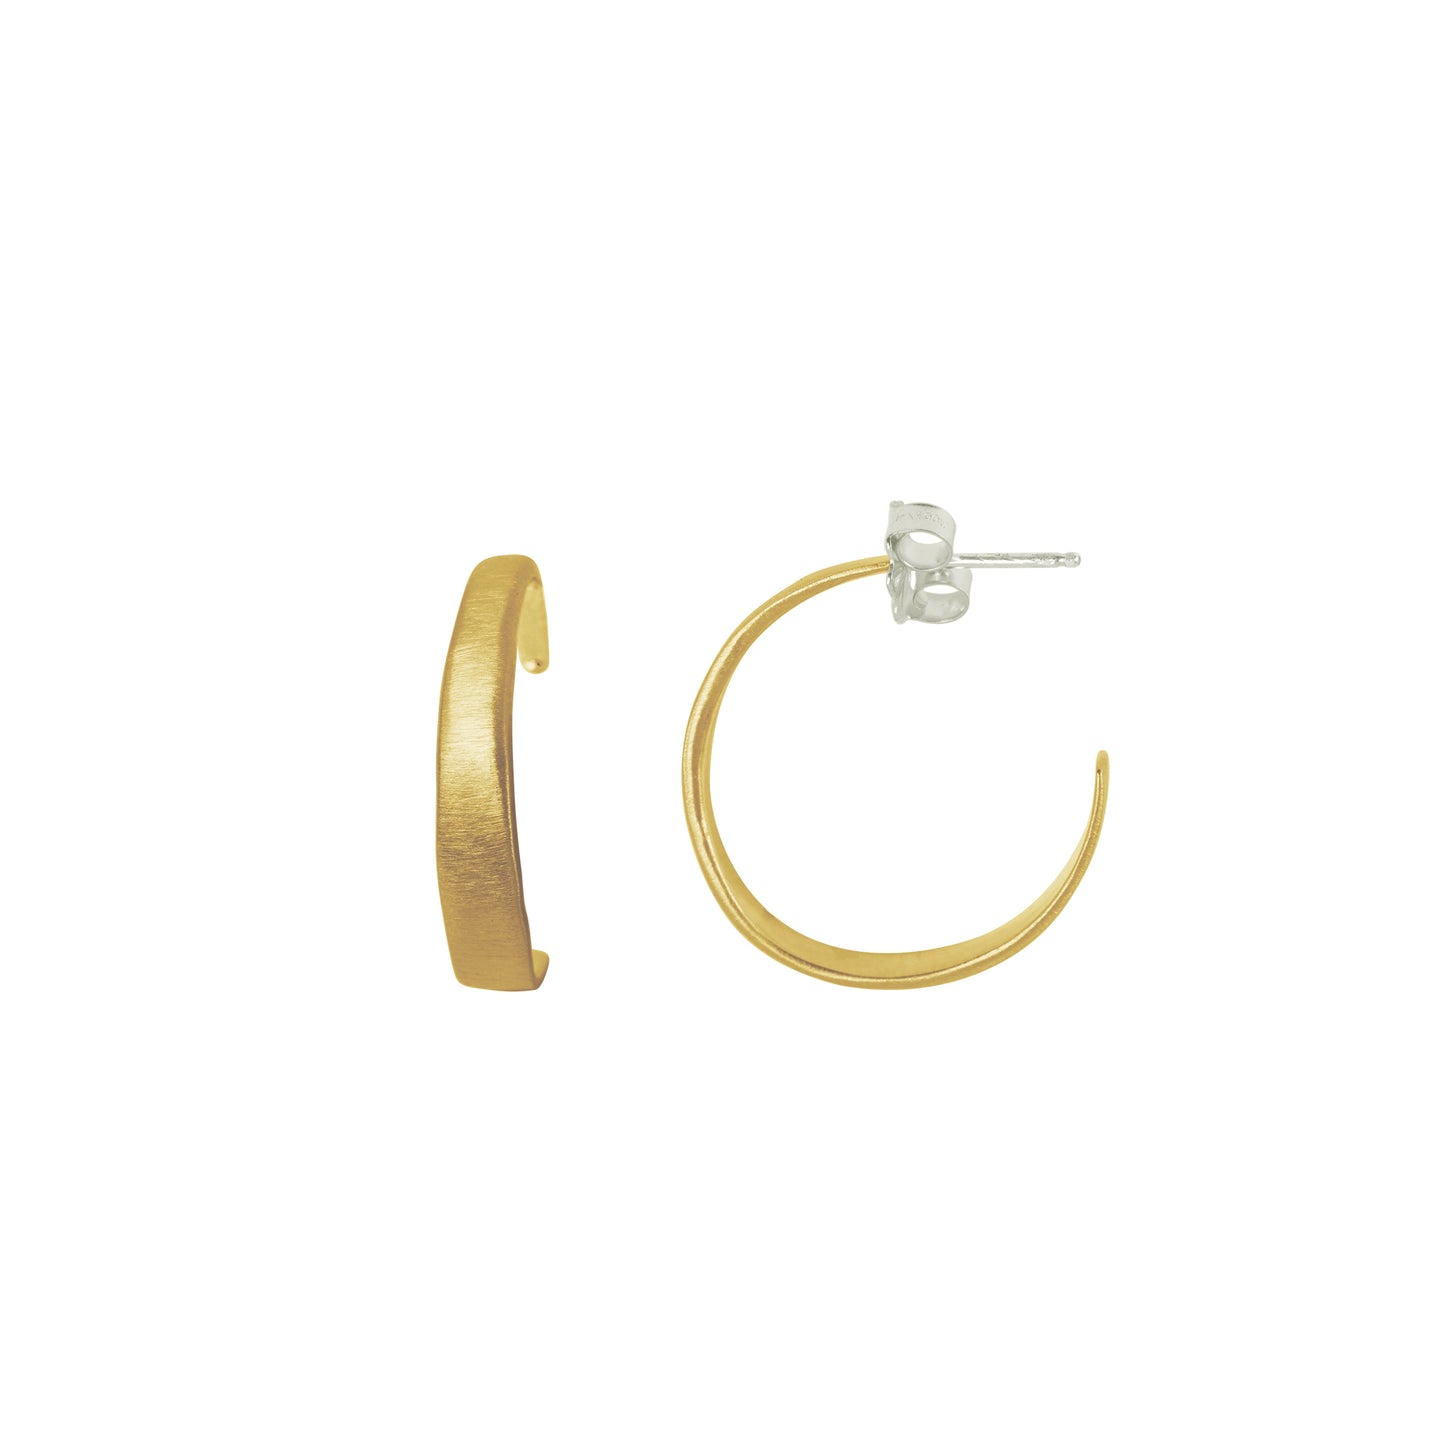 Tapered Hoop Earrings - Gold